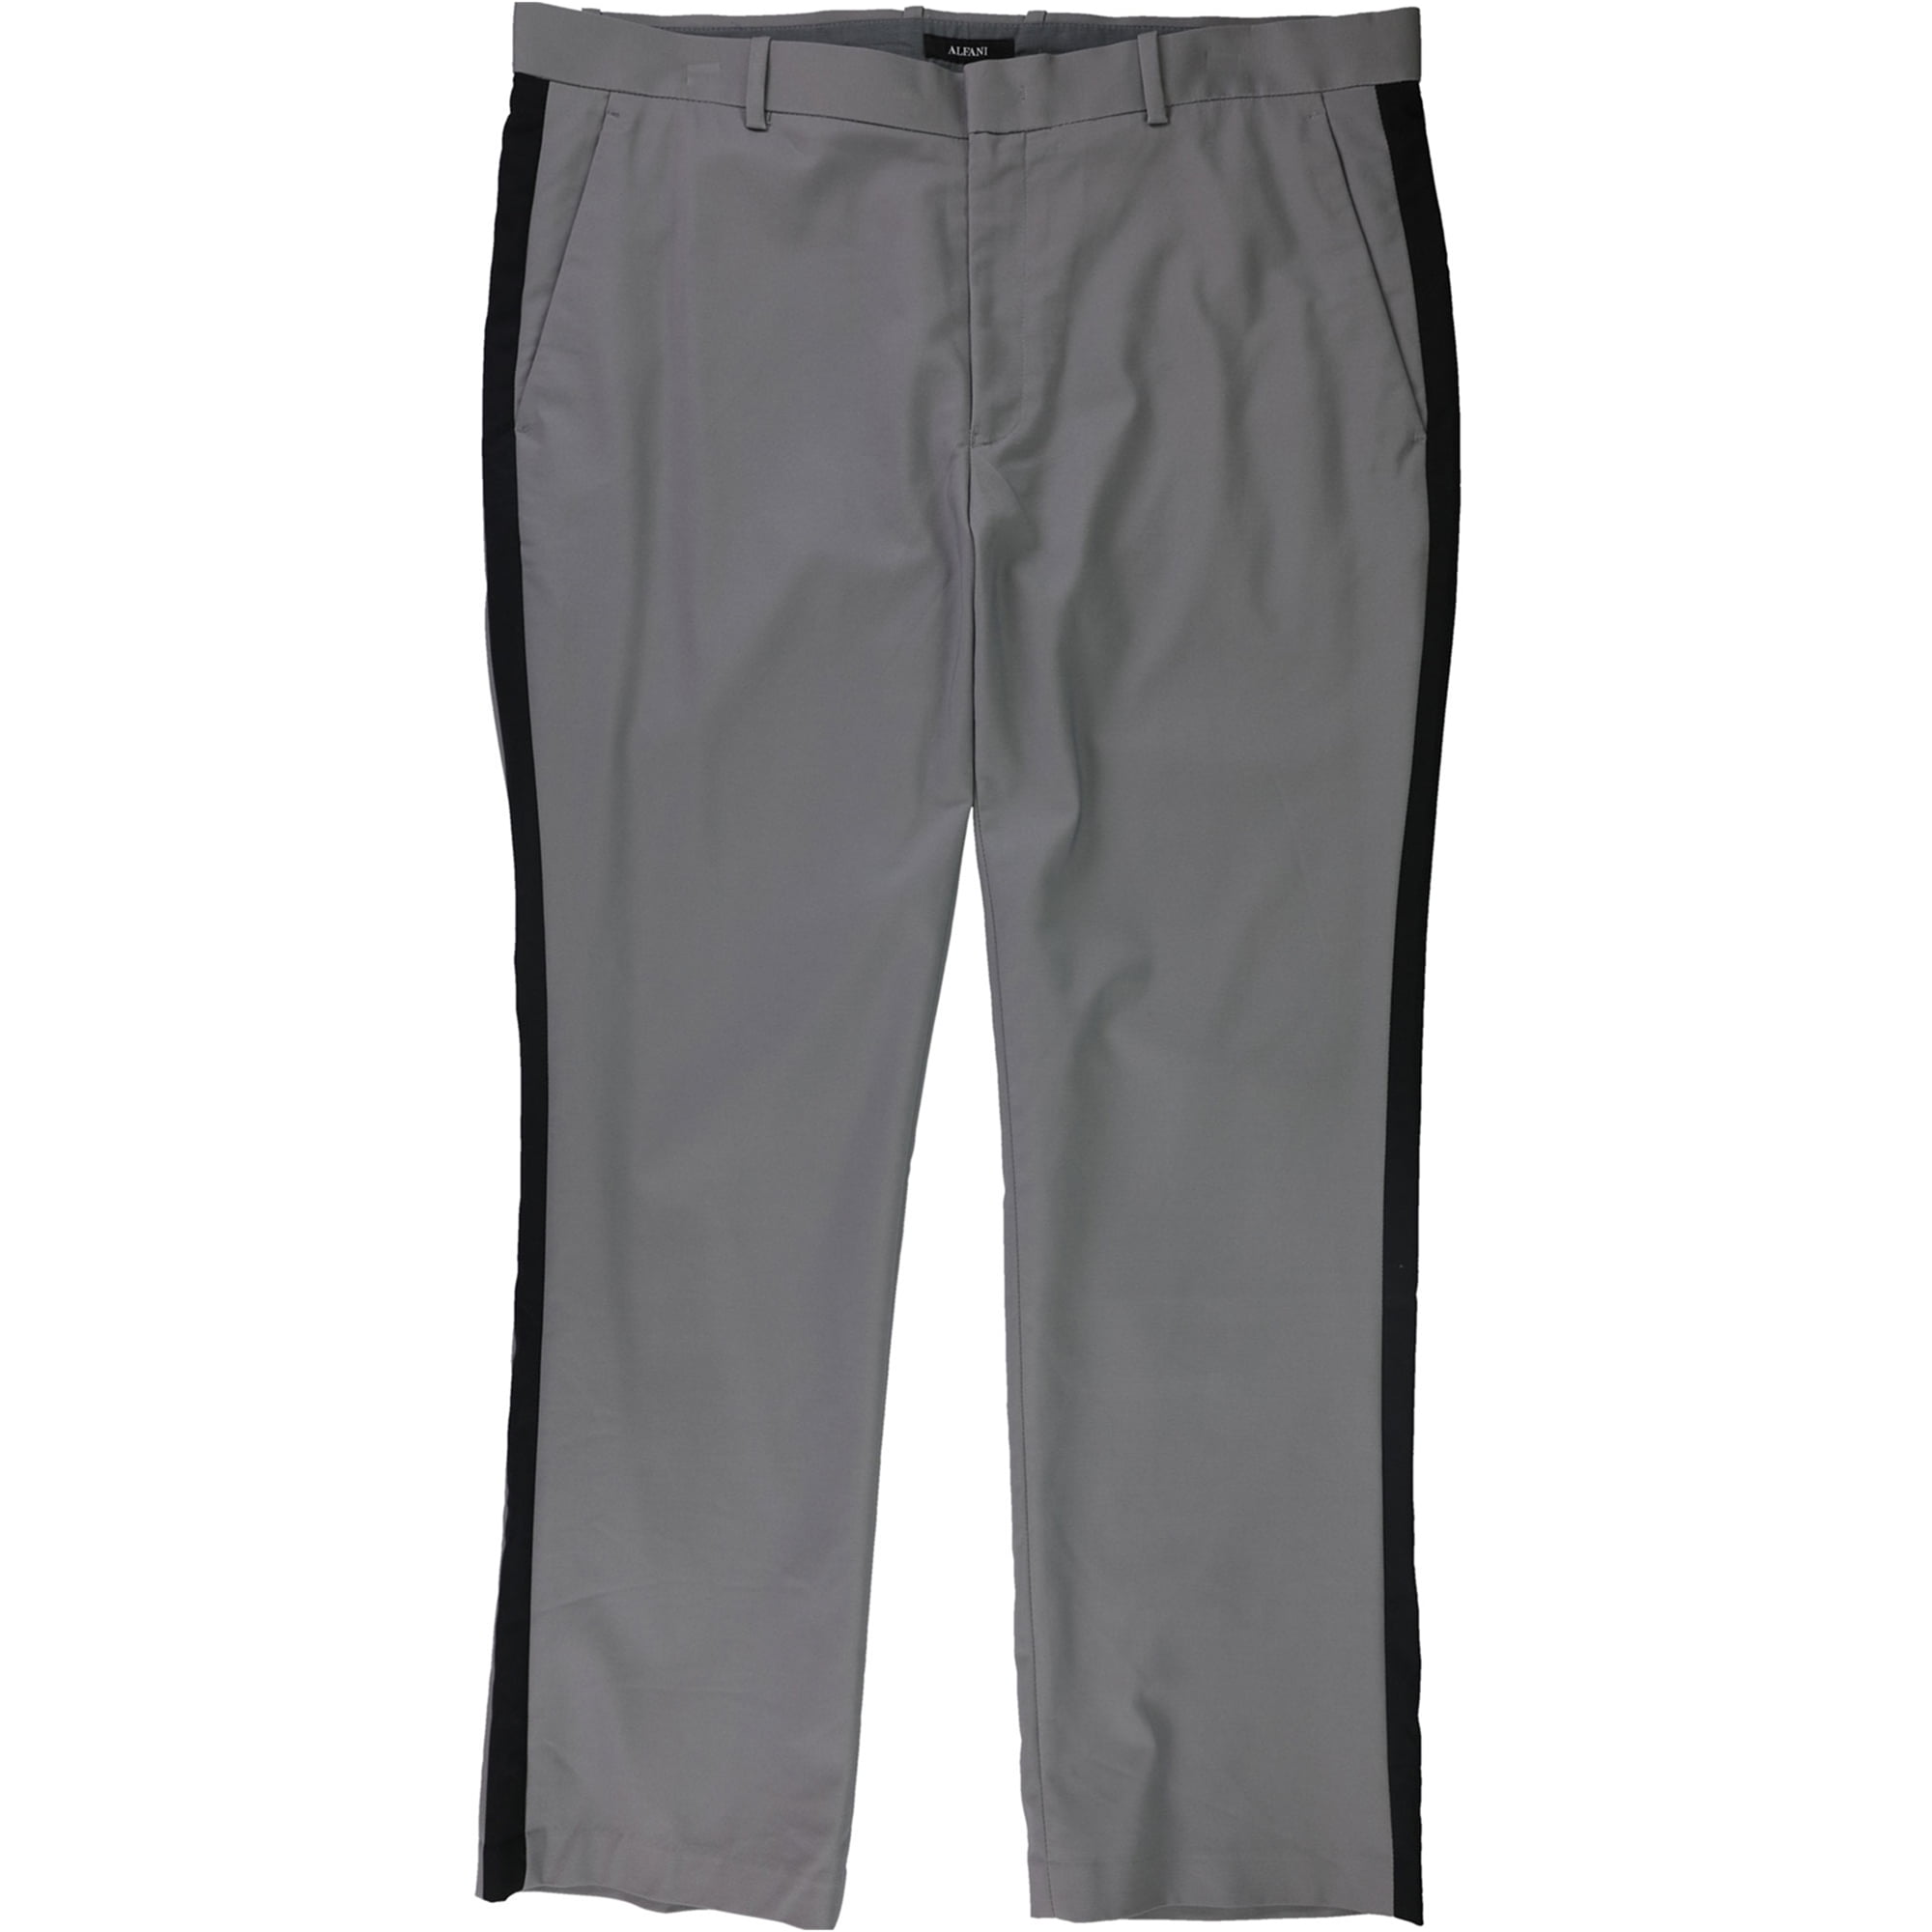 Alfani Mens Side Striped Dress Pants Slacks, Grey, 36W x 29L - Walmart.com